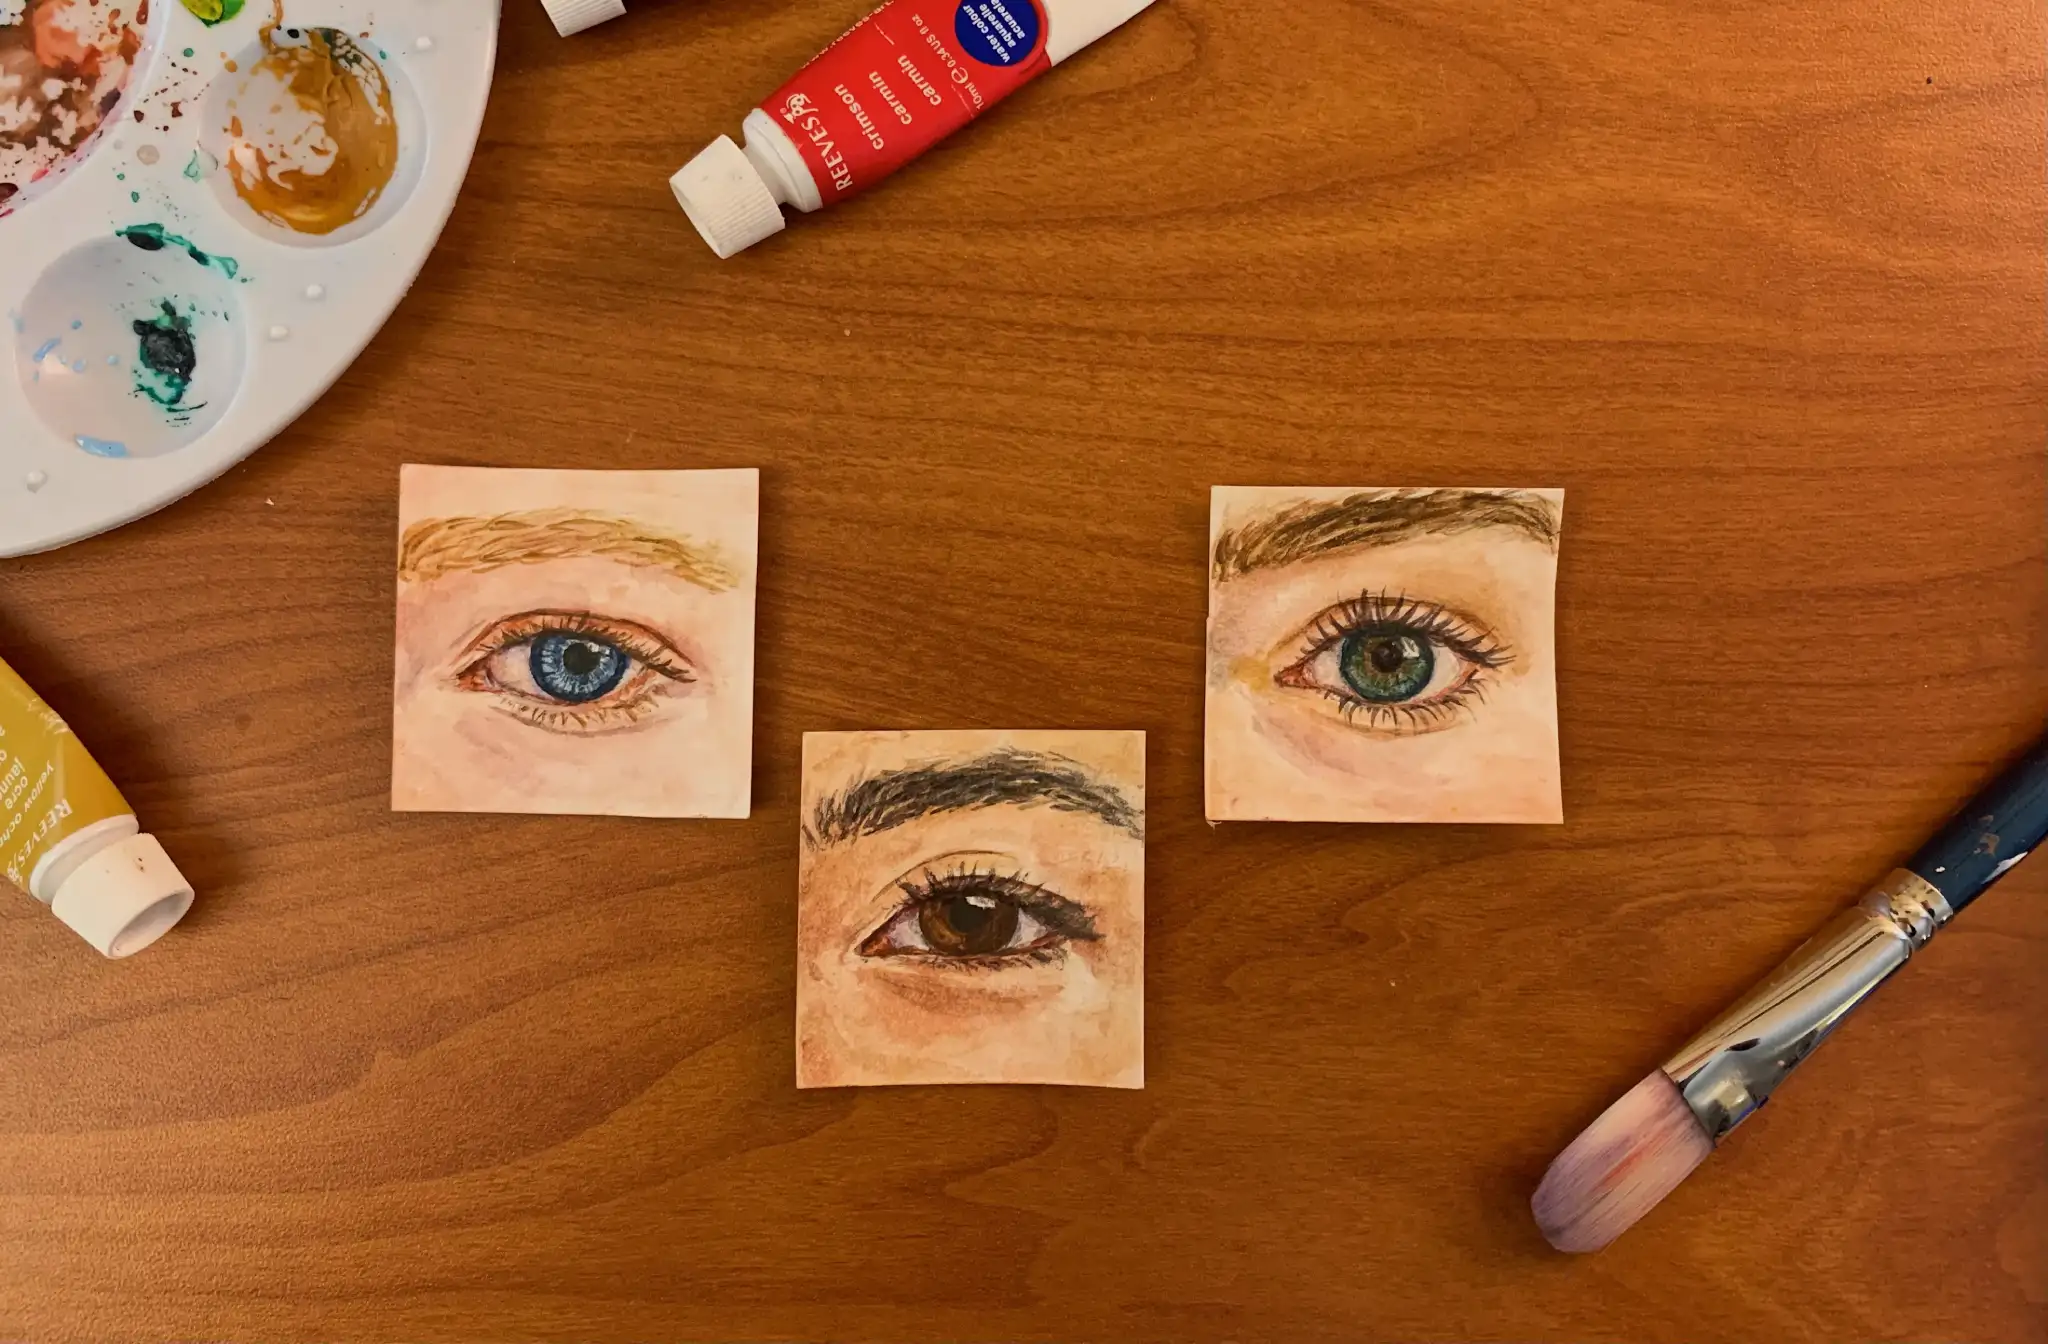 Watercolor paintings of three human eyes